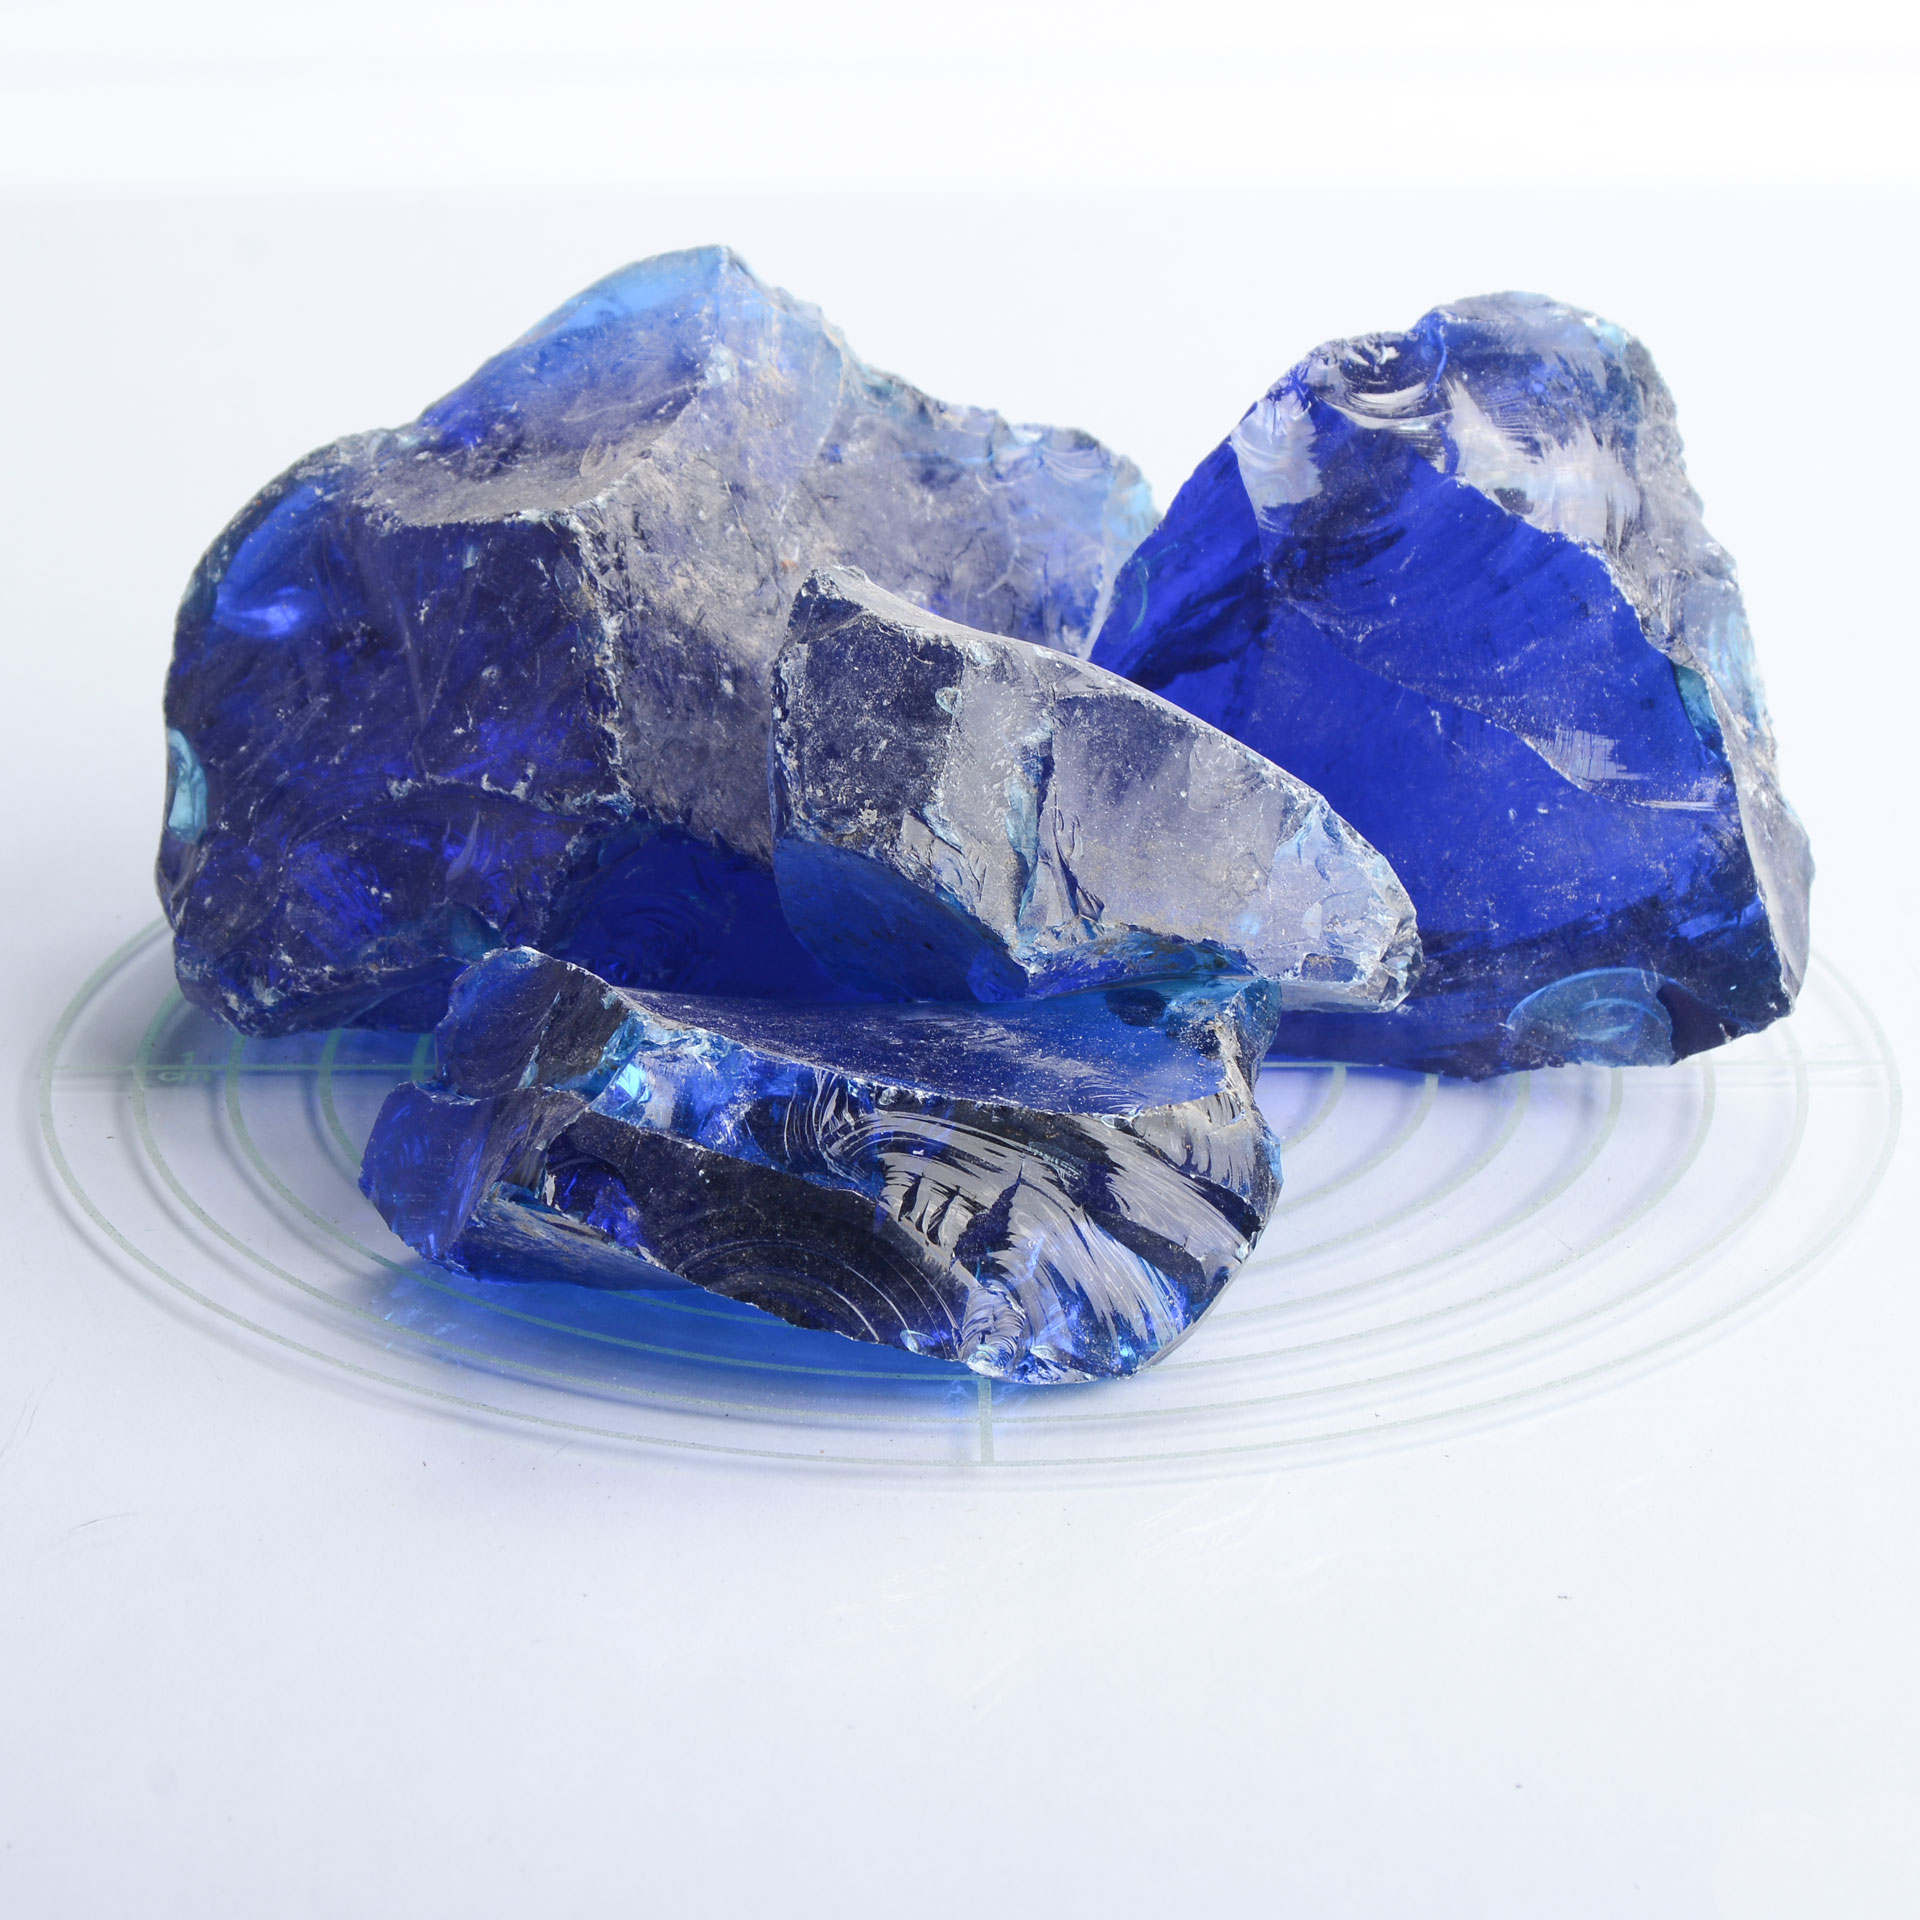 Schicker Mineral Glassteine kobaltblau 60-120 mm 10 kg20 kg Sack Glasbrocken